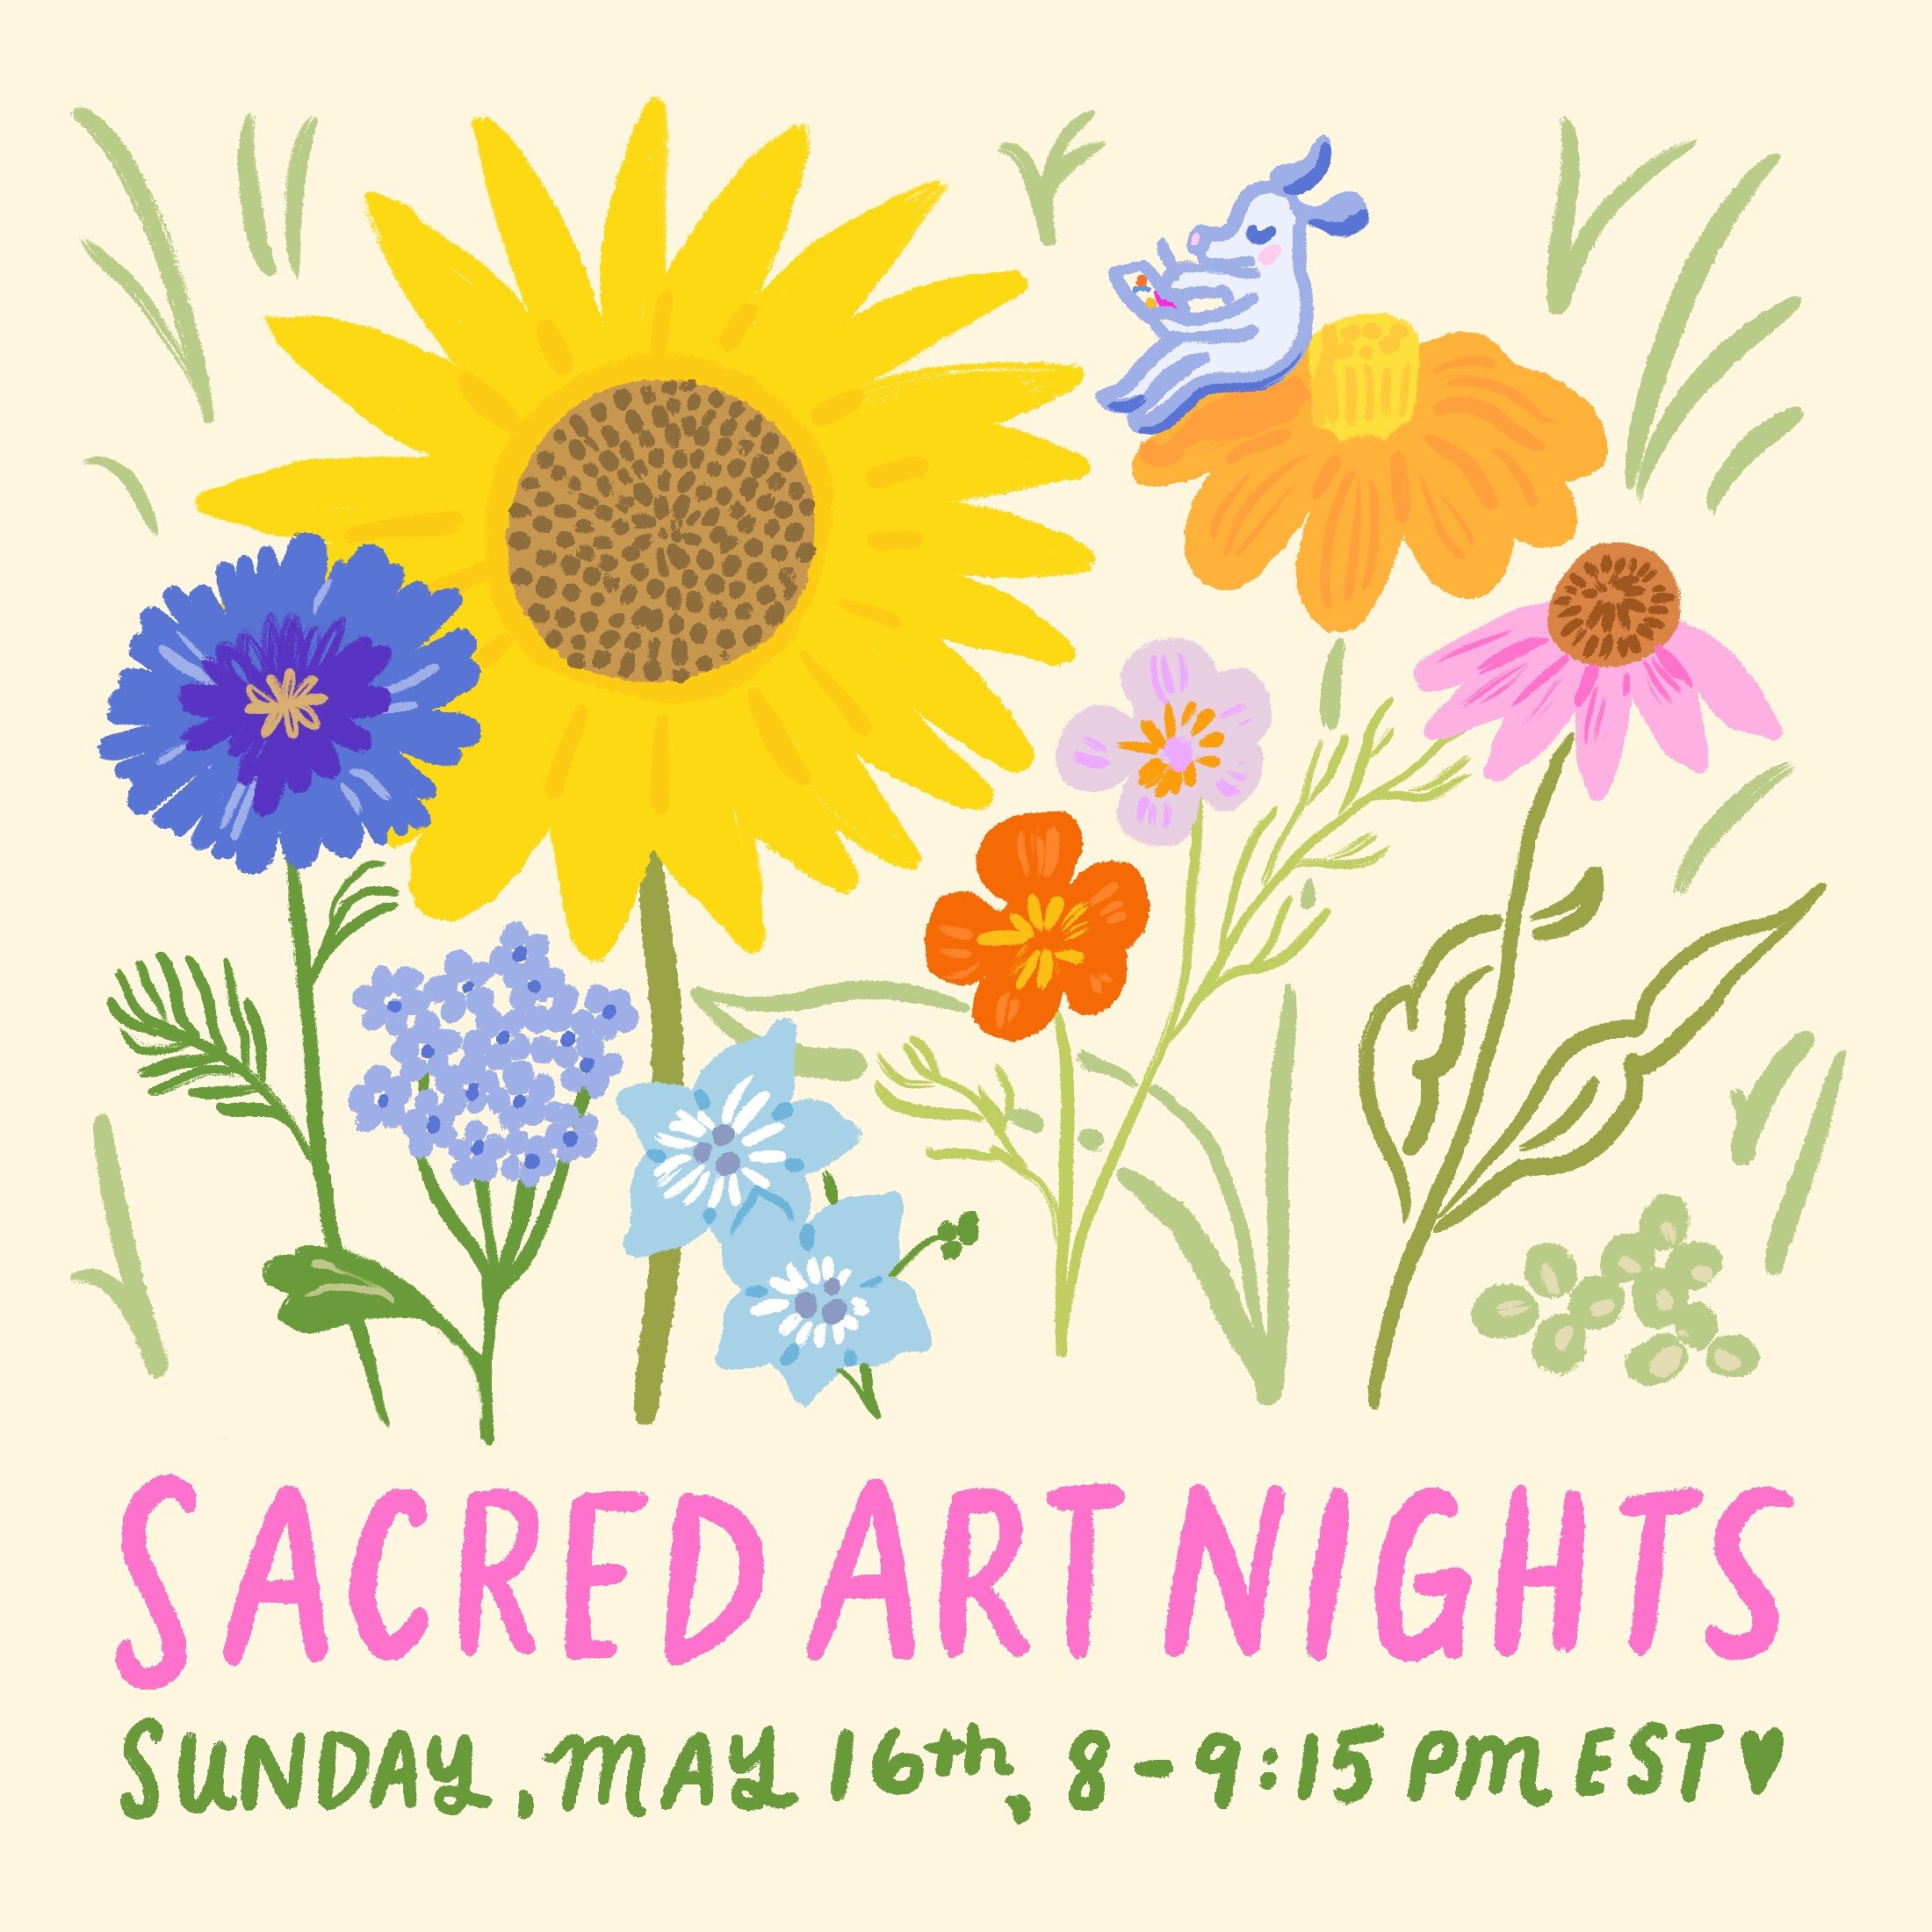 Sacred Vibes - Art Night Poster.jpg